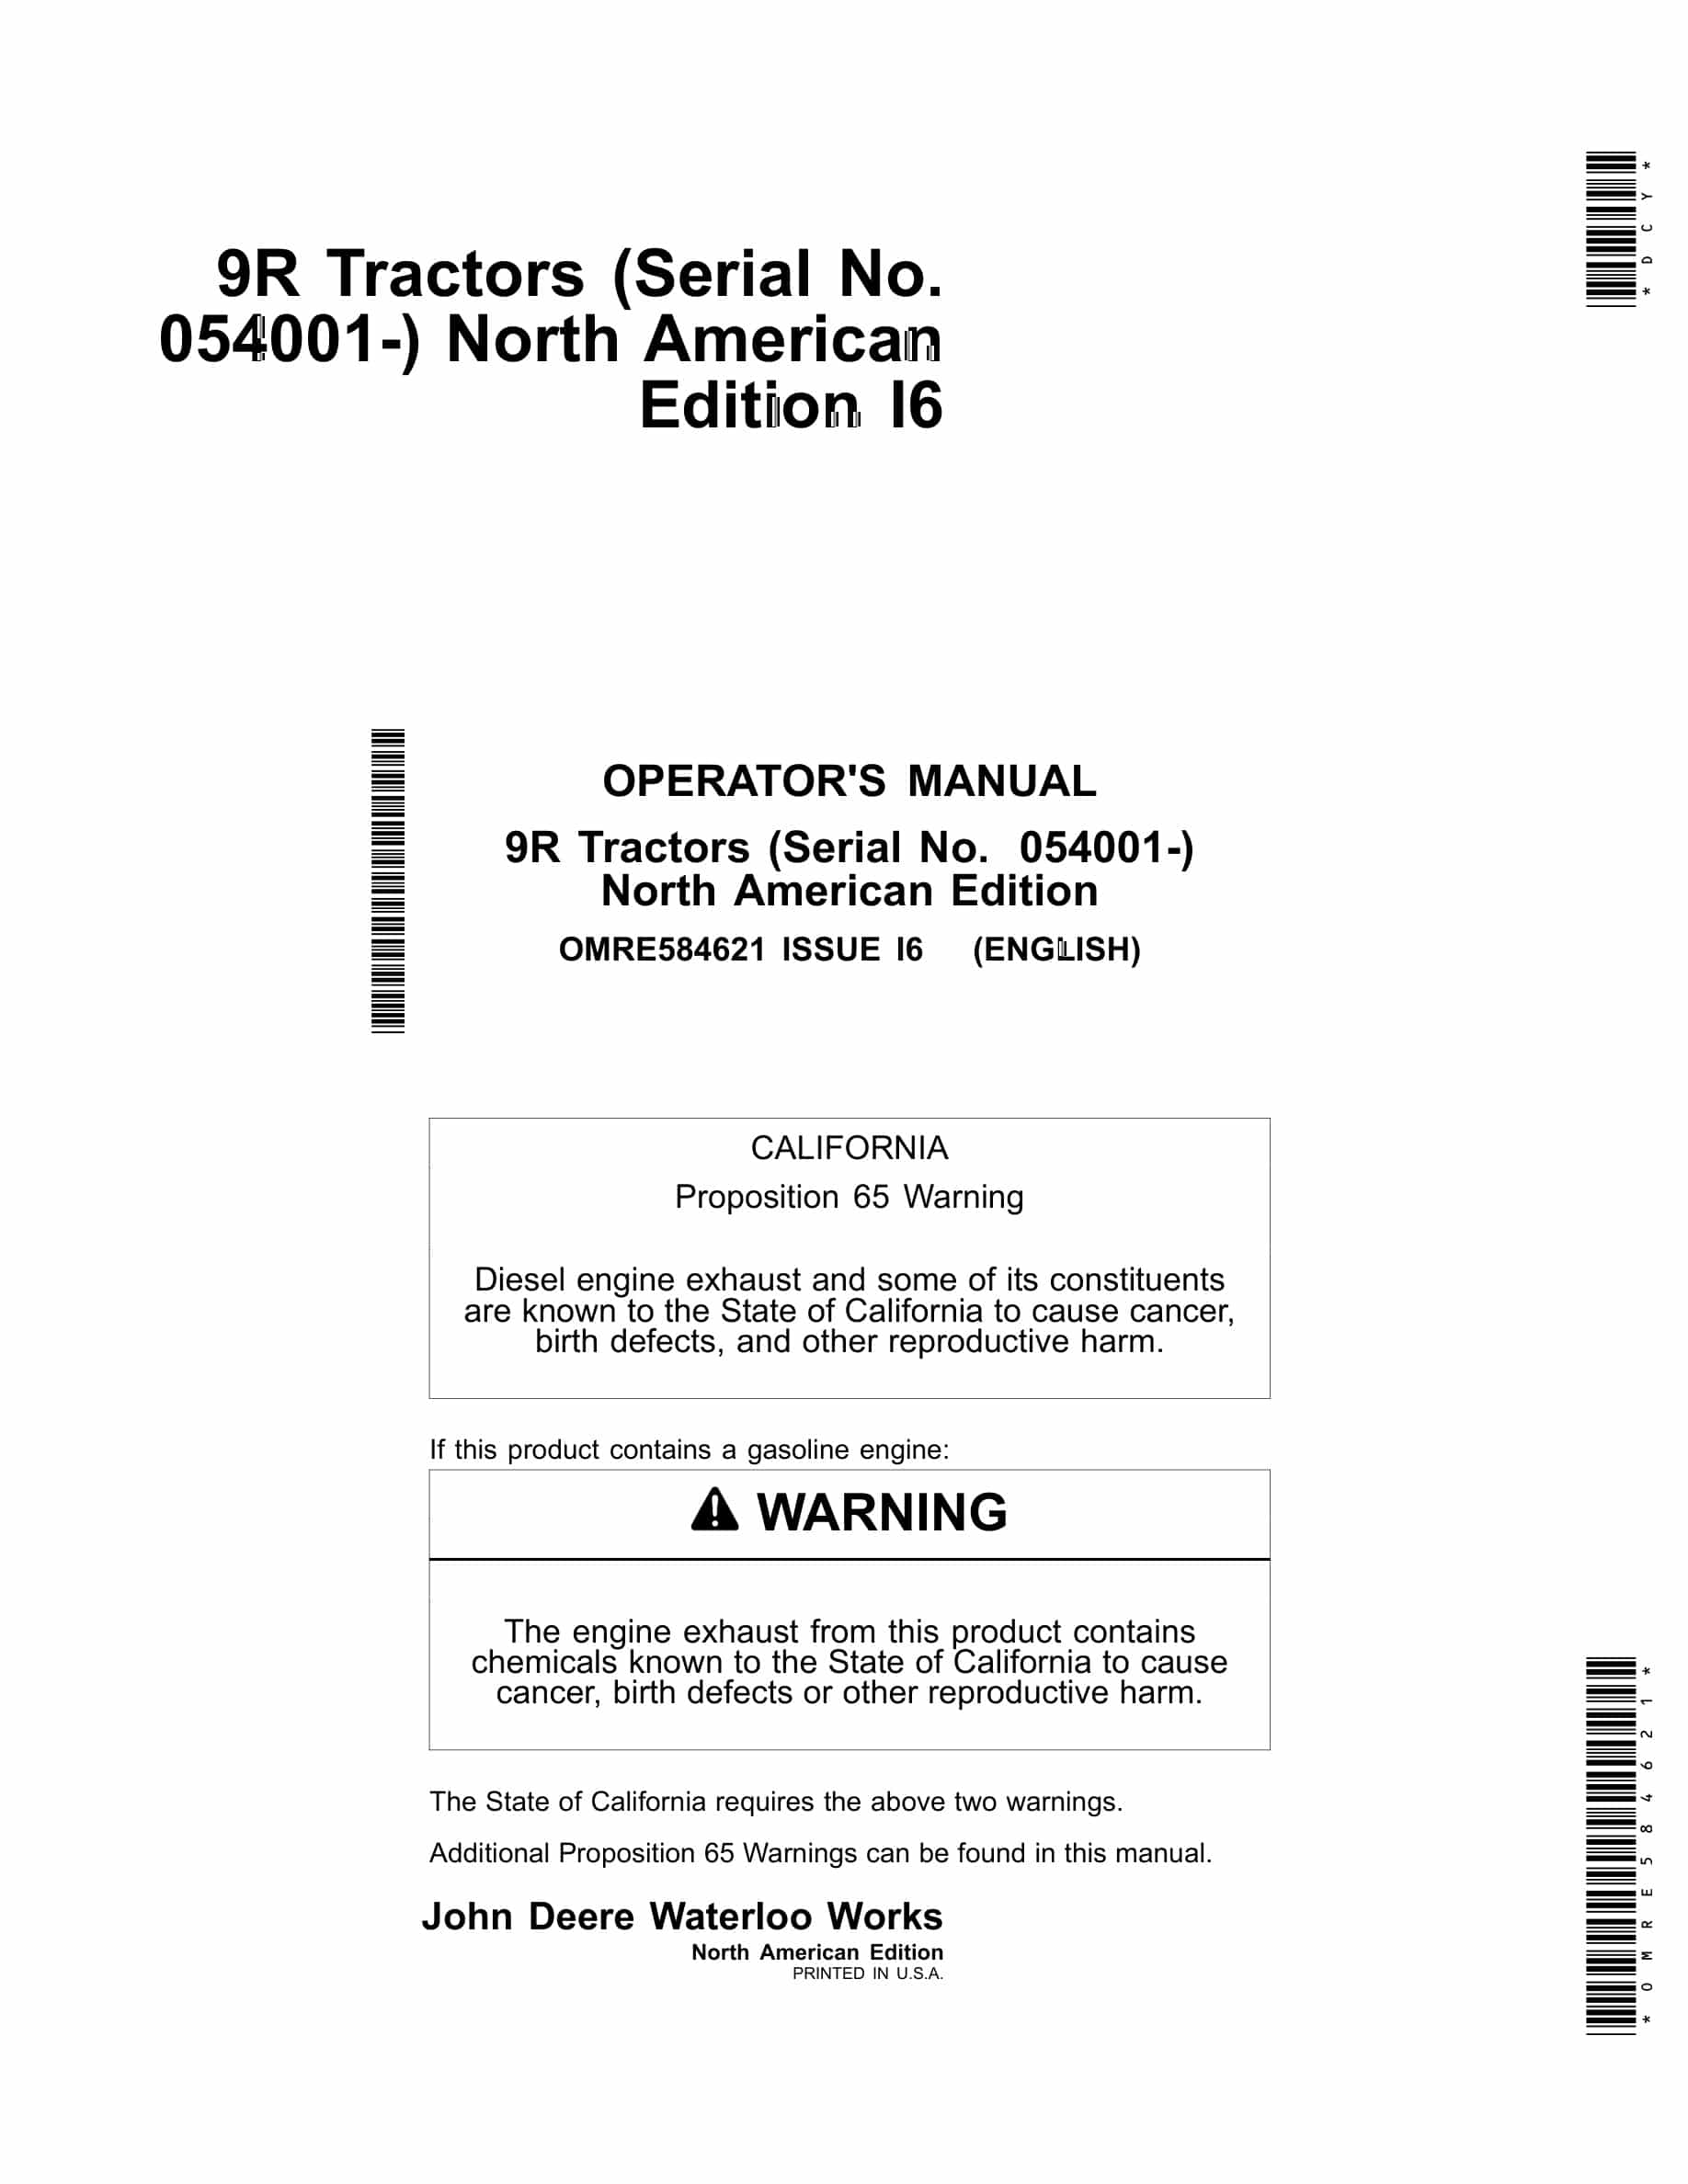 John Deere 9R Tractor Operator Manual OMRE584621-1